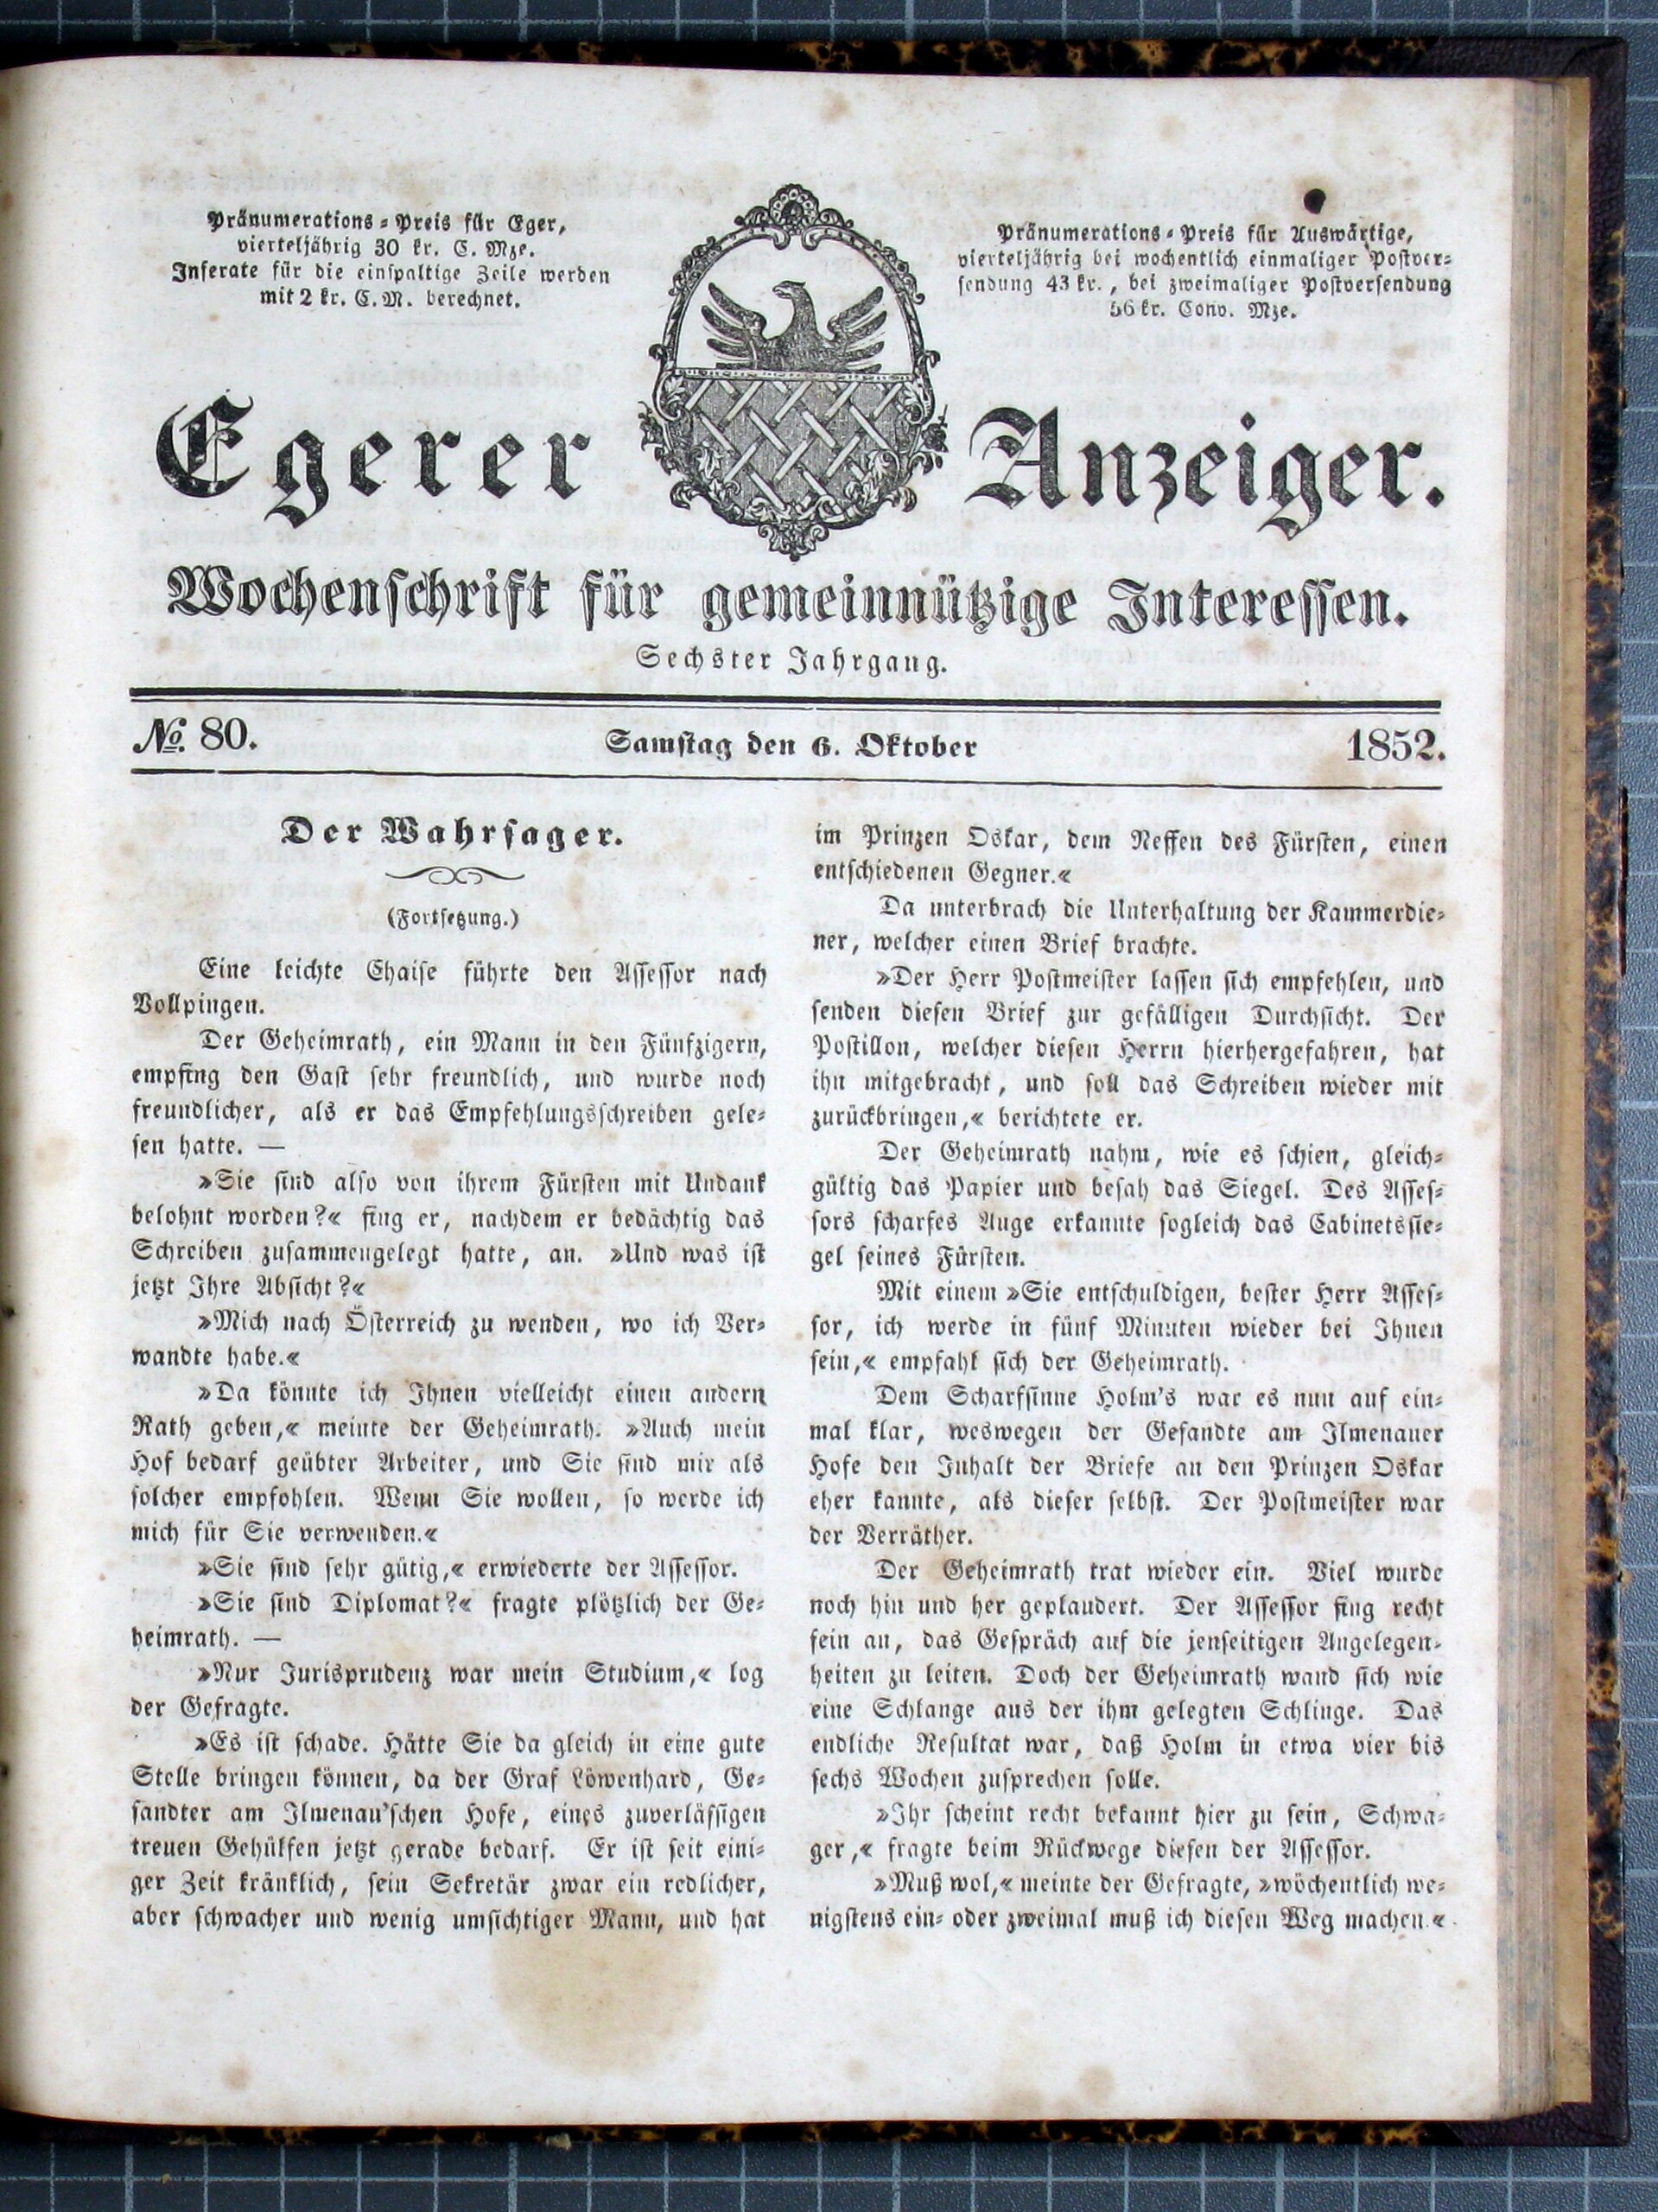 1. egerer-anzeiger-1852-10-06-n80_1635